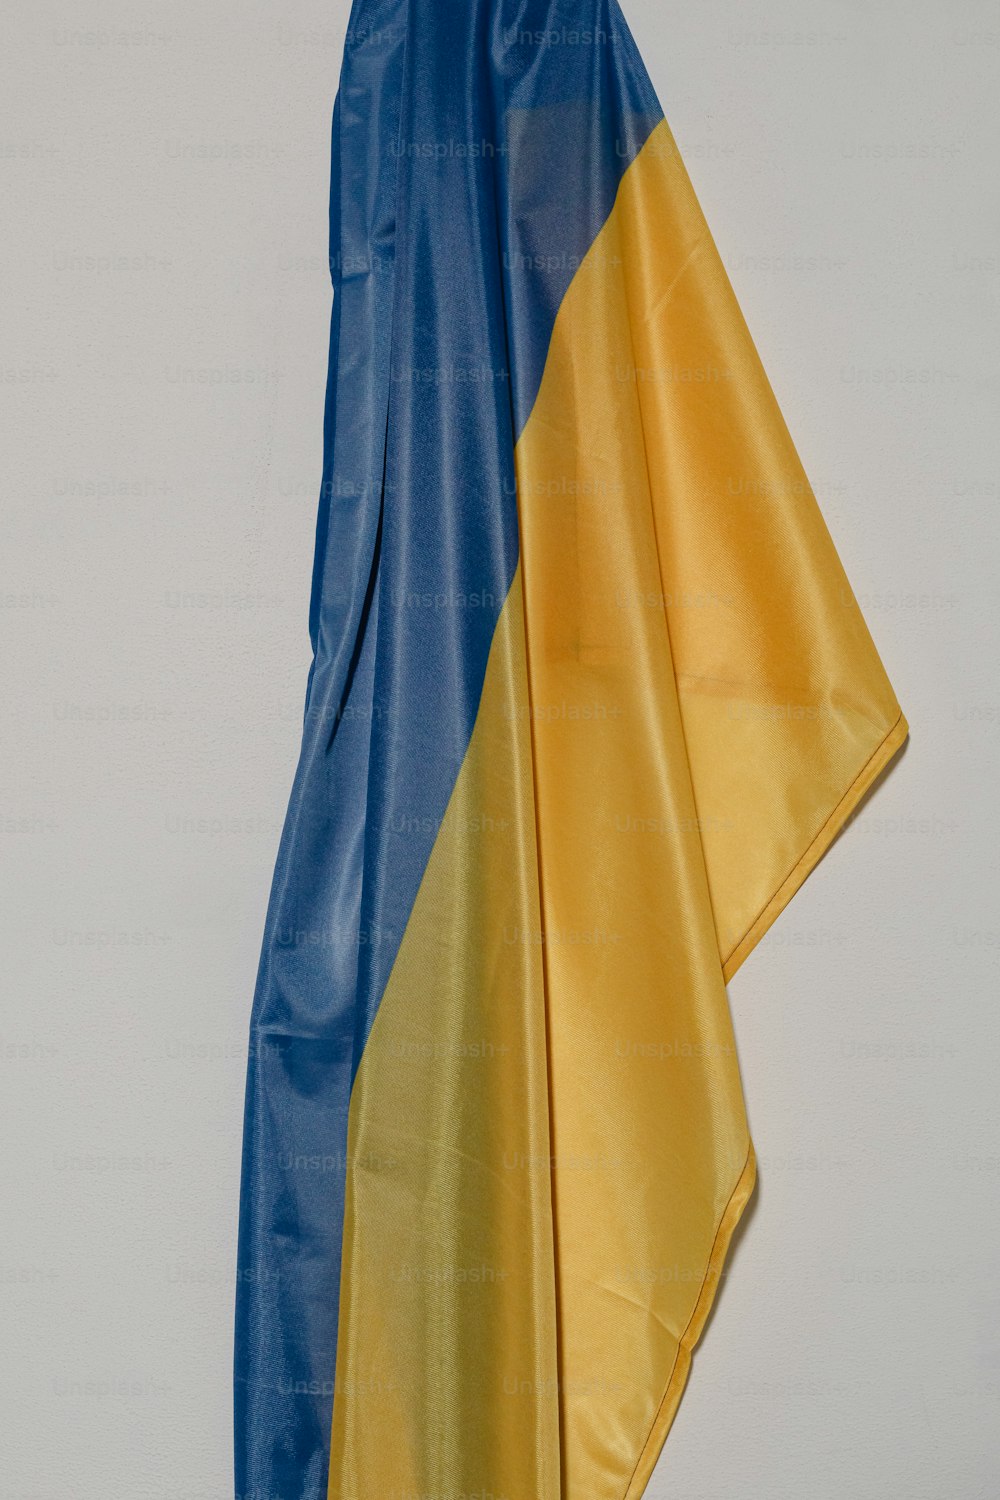 Una bandera azul y amarilla colgada en una pared